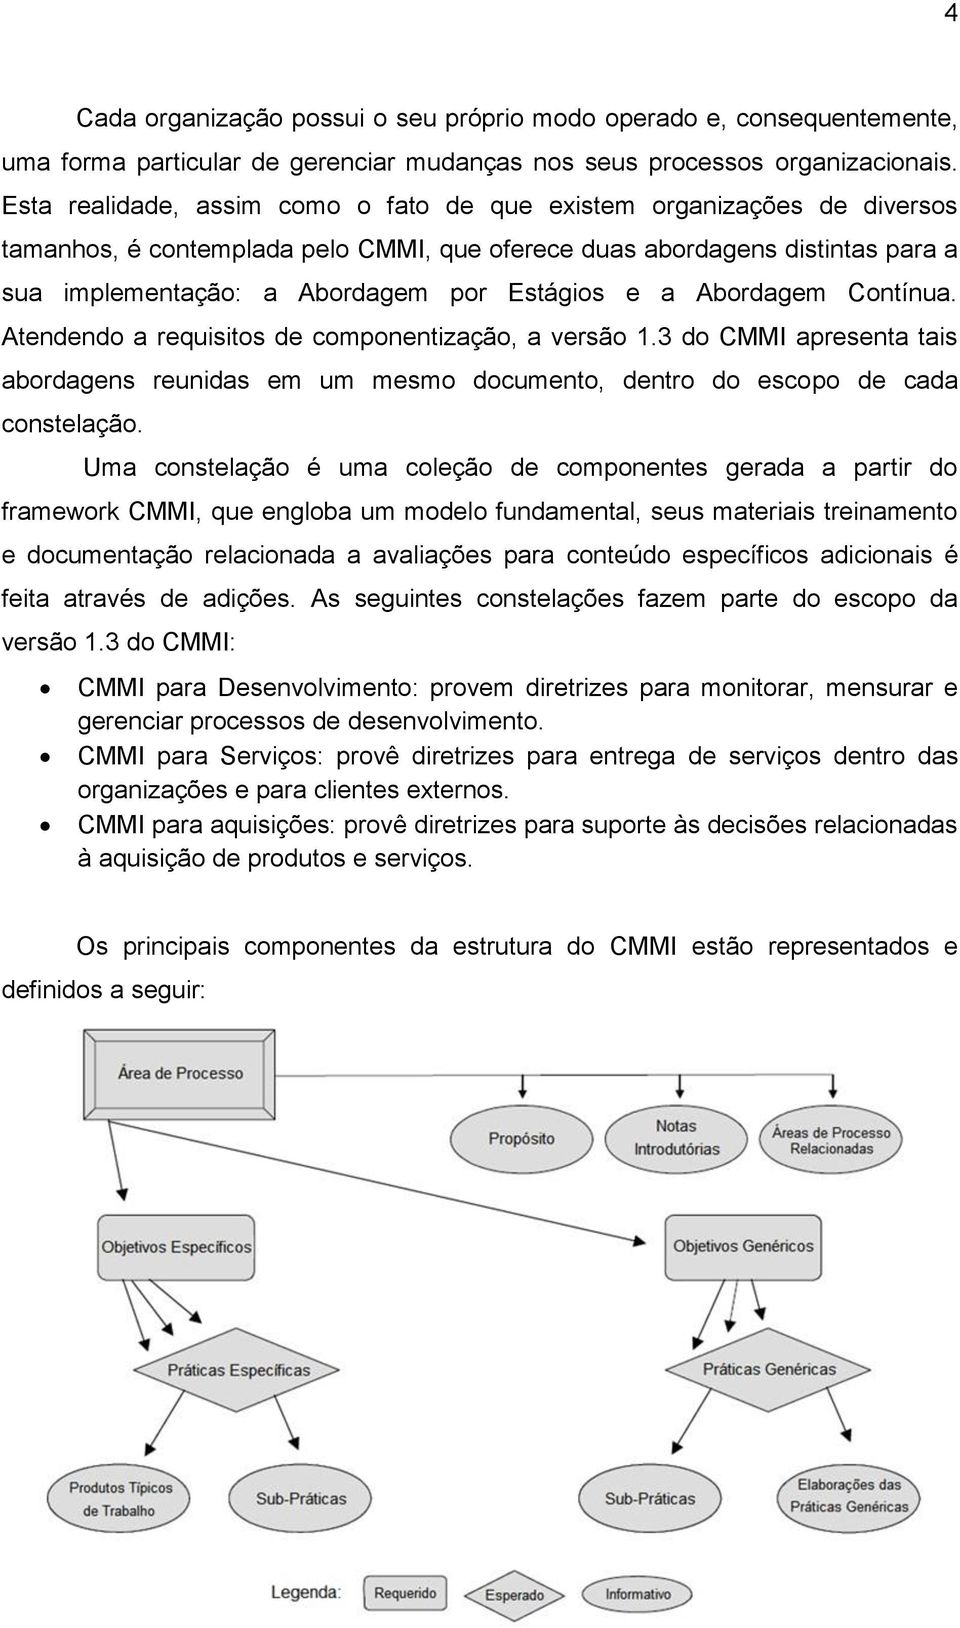 a Abordagem Contínua. Atendendo a requisitos de componentização, a versão 1.3 do CMMI apresenta tais abordagens reunidas em um mesmo documento, dentro do escopo de cada constelação.